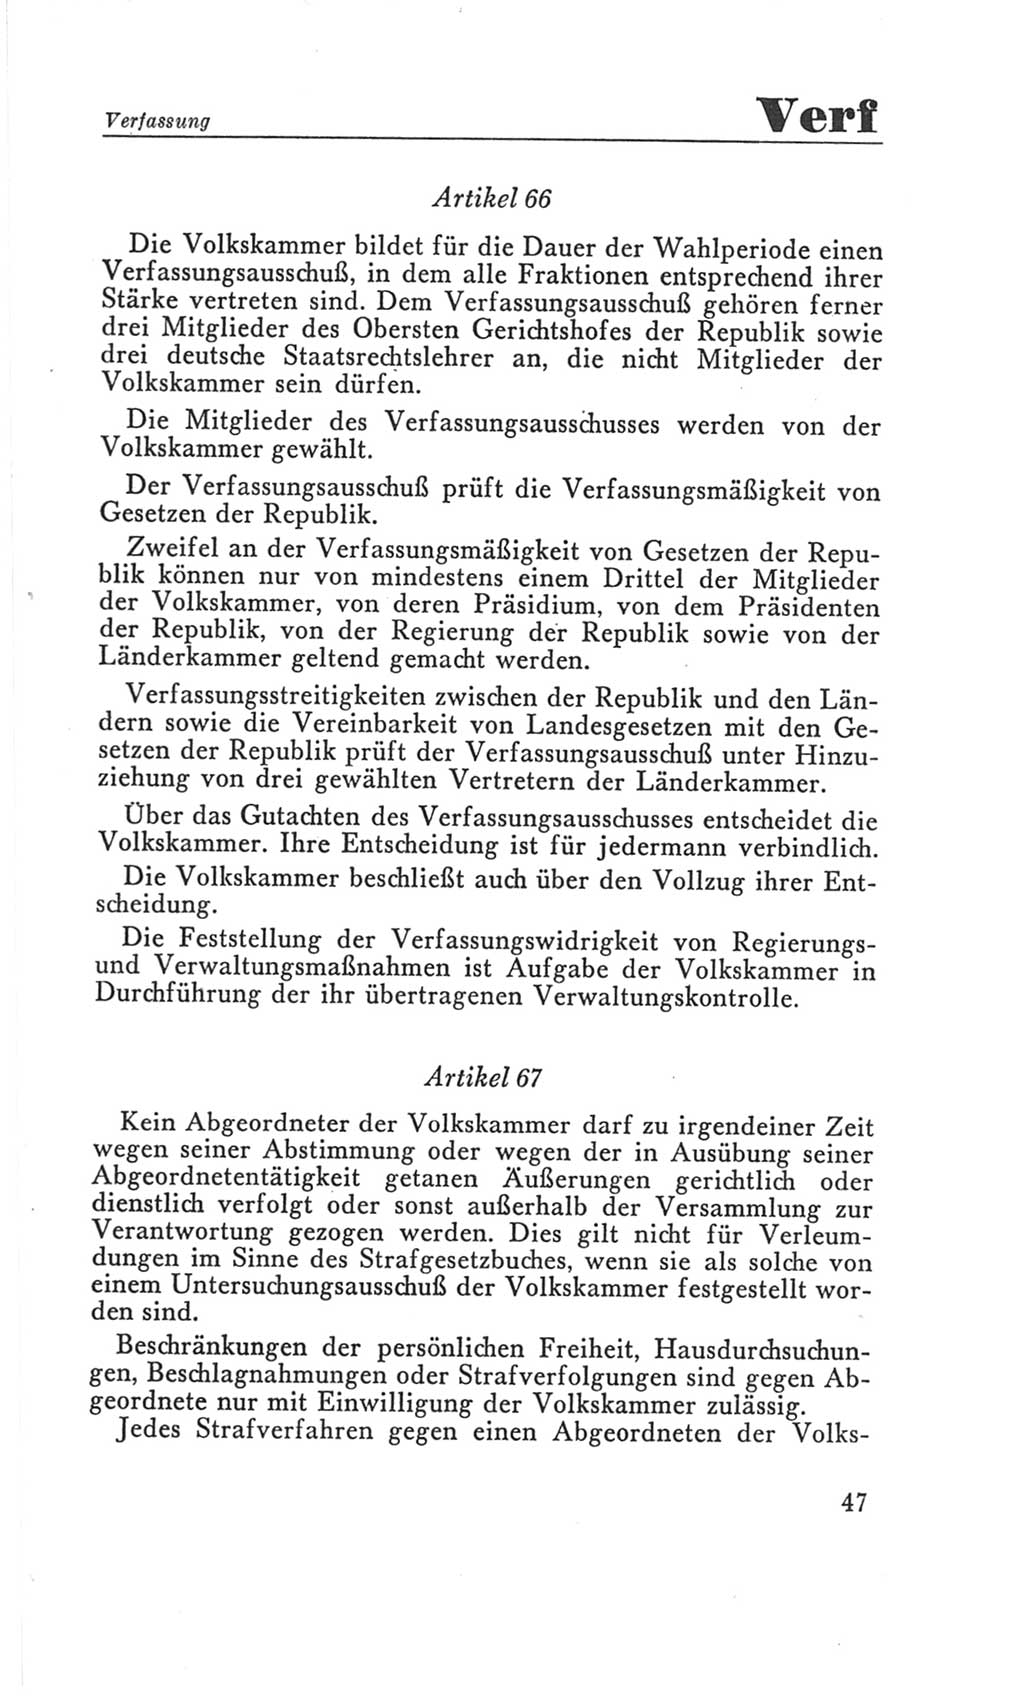 Handbuch der Volkskammer (VK) der Deutschen Demokratischen Republik (DDR), 3. Wahlperiode 1958-1963, Seite 47 (Hdb. VK. DDR 3. WP. 1958-1963, S. 47)